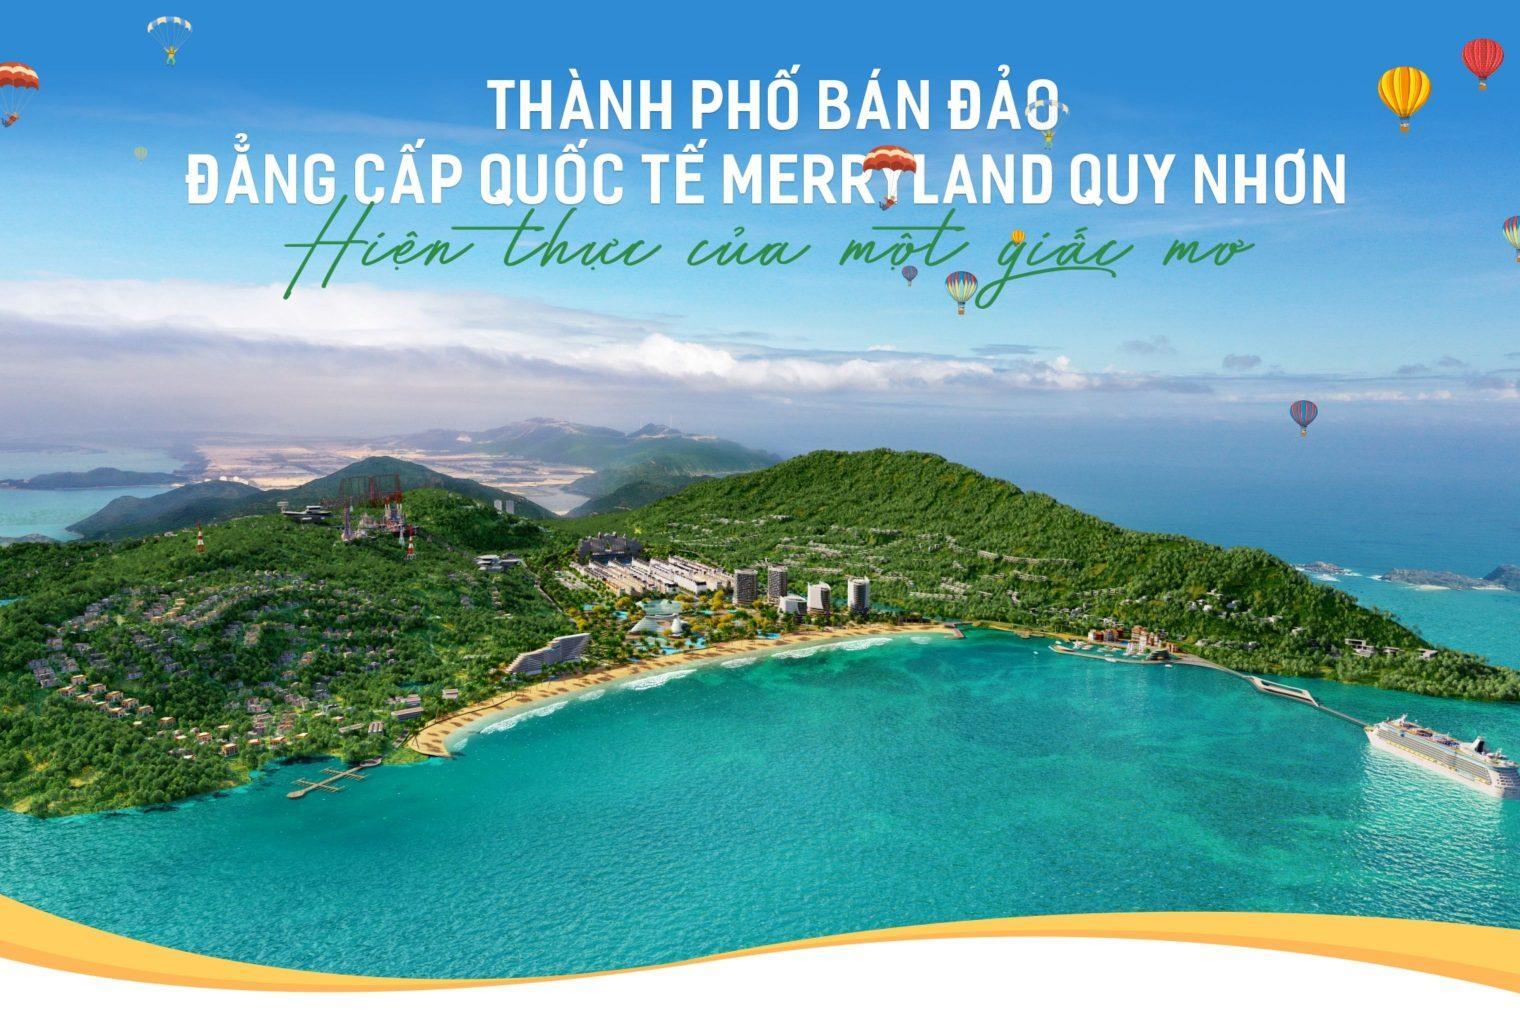 MerryLand Hải Giang Quy Nhơn